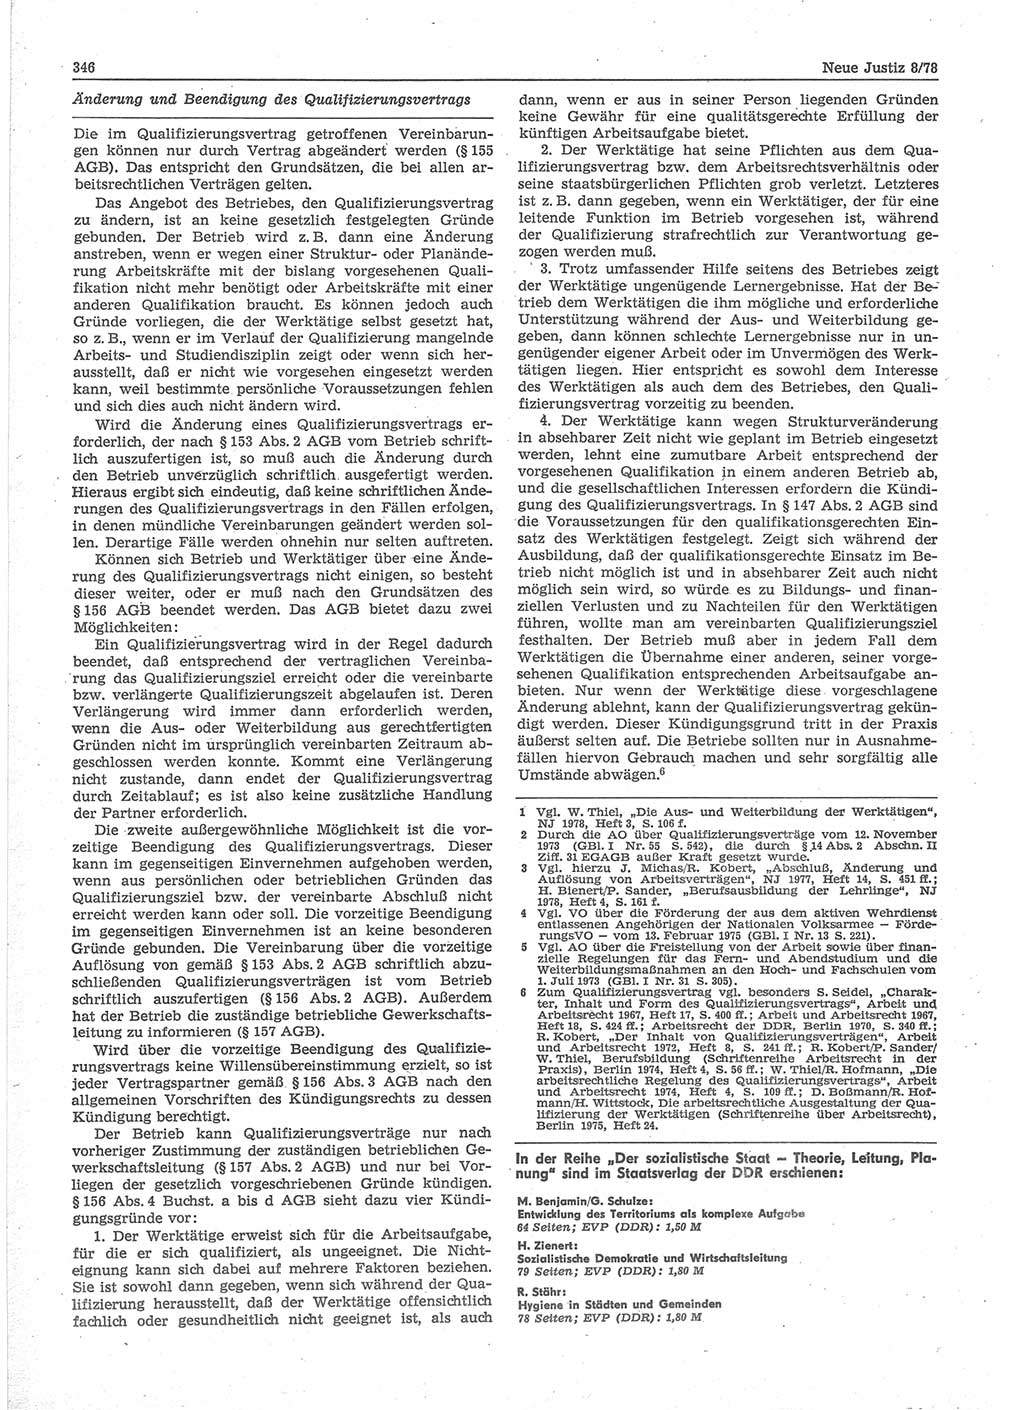 Neue Justiz (NJ), Zeitschrift für sozialistisches Recht und Gesetzlichkeit [Deutsche Demokratische Republik (DDR)], 32. Jahrgang 1978, Seite 346 (NJ DDR 1978, S. 346)